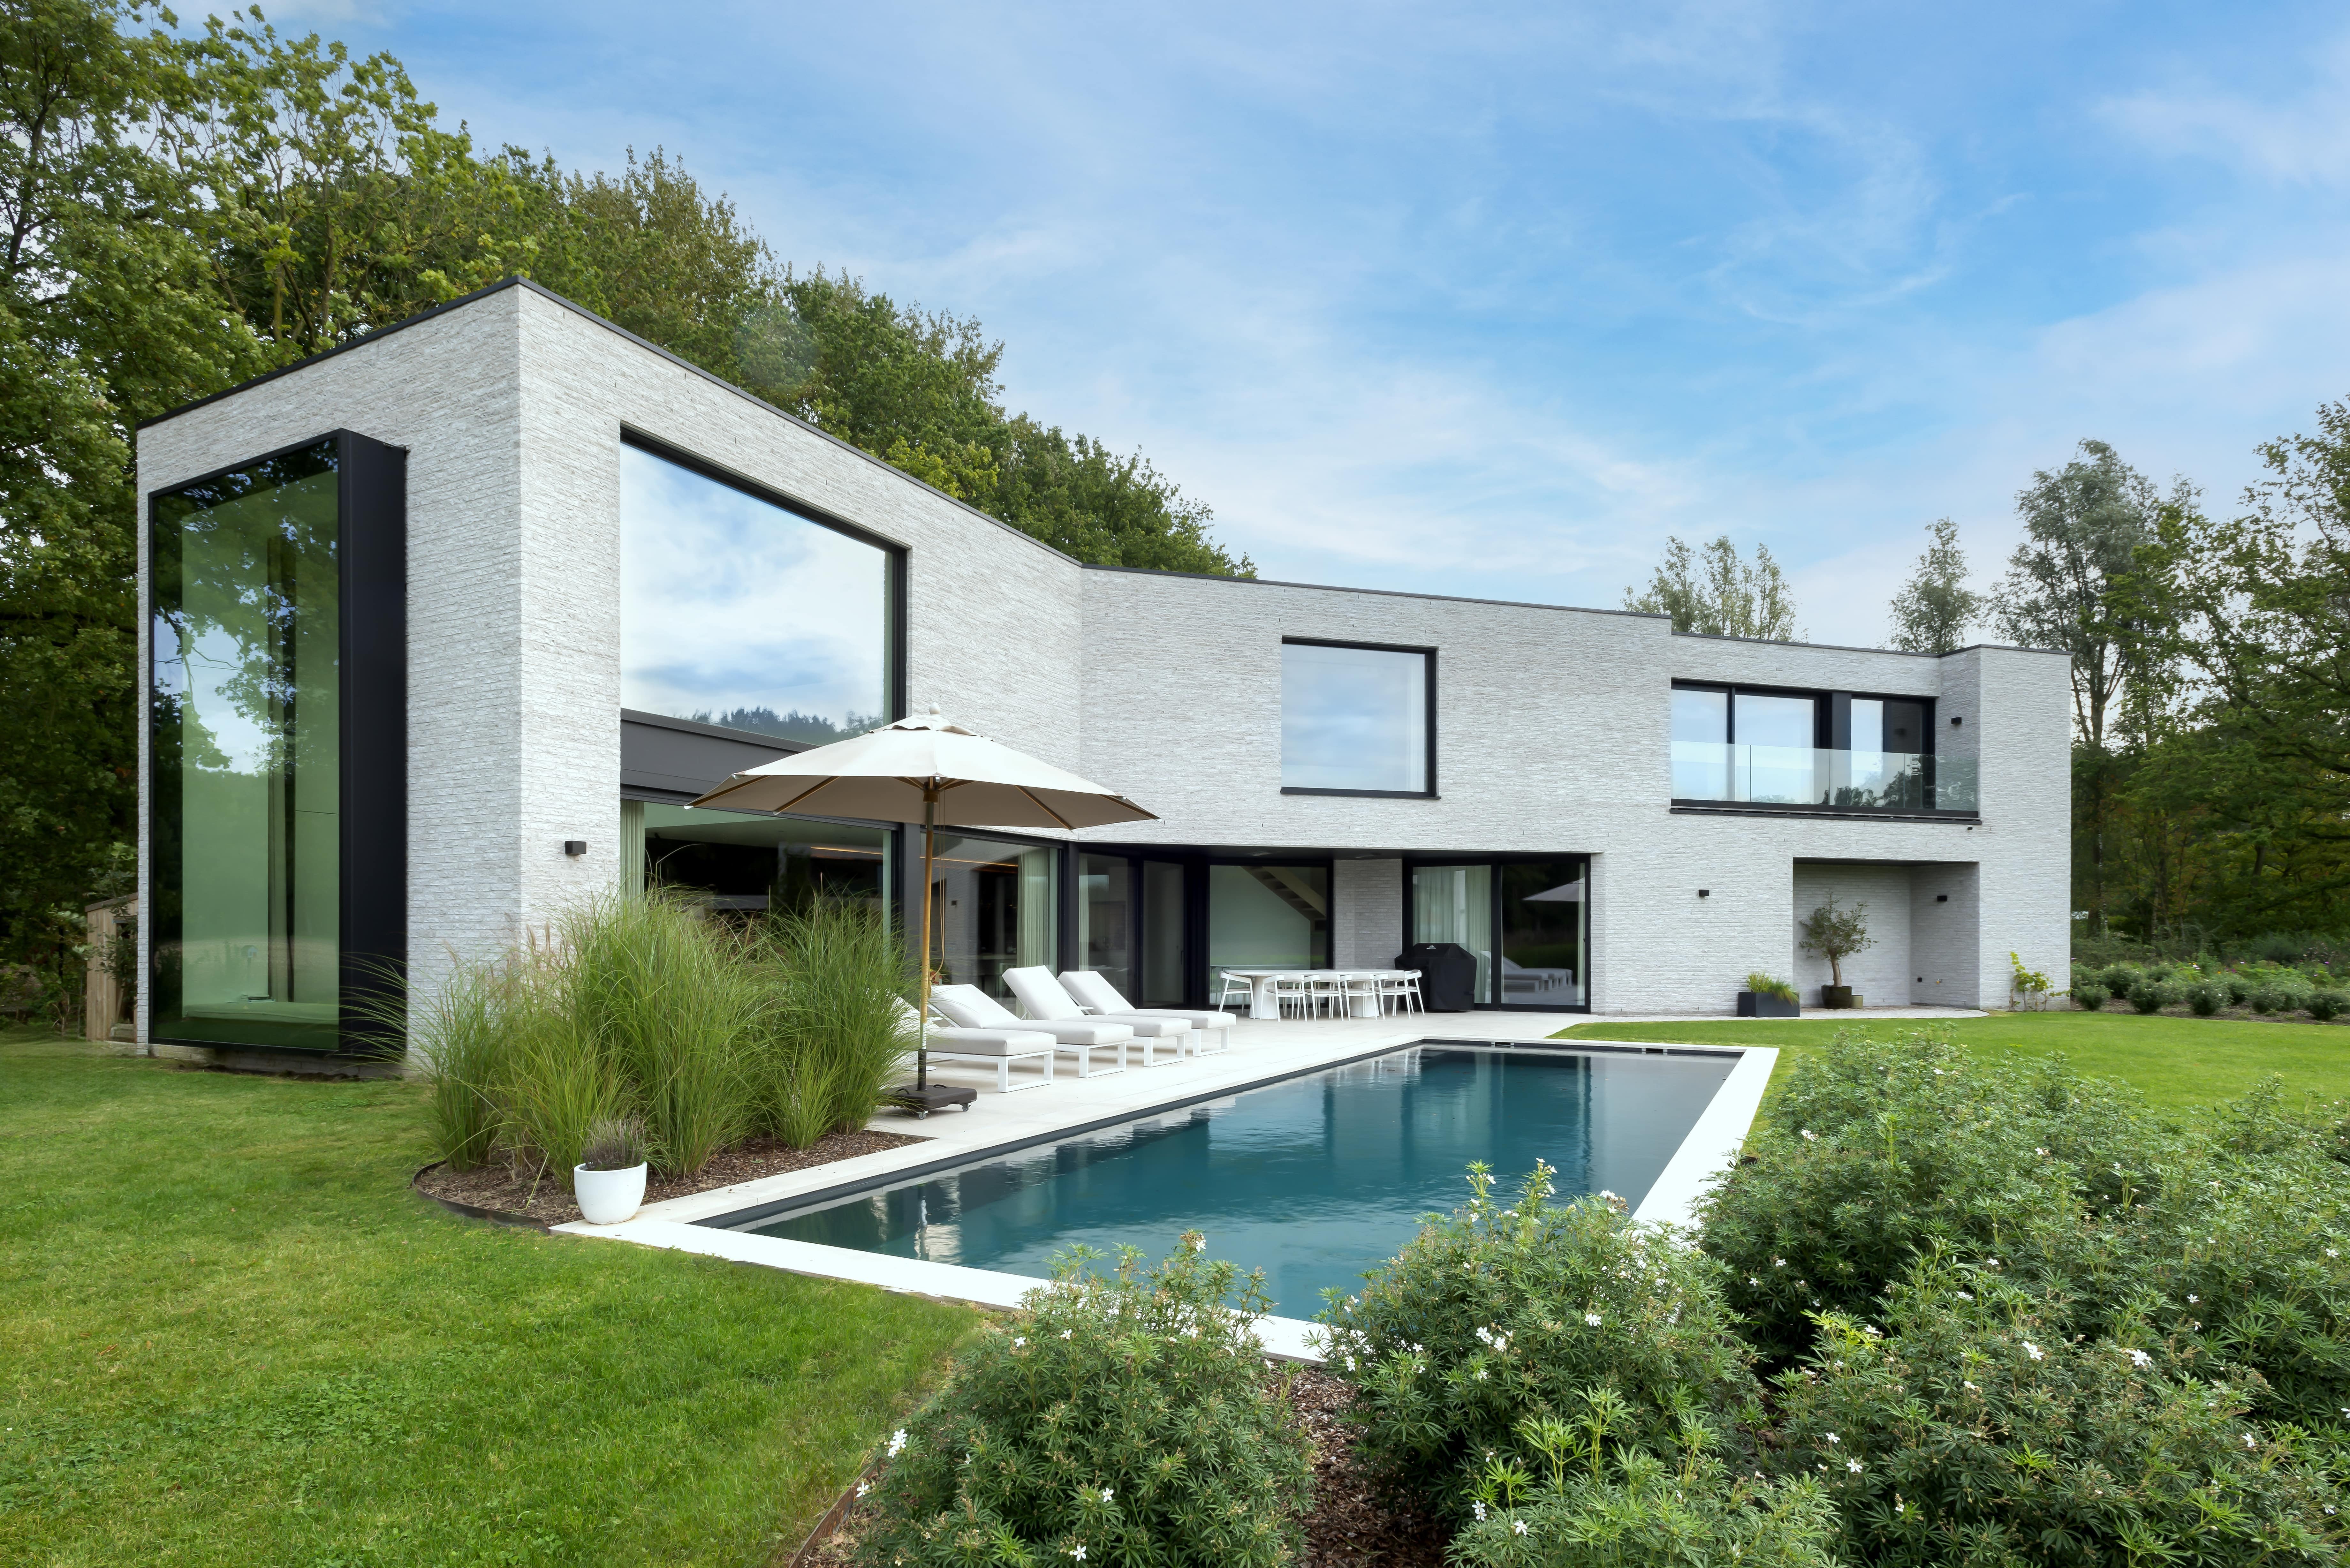 Moderne nieuwbouwwoning met tuin en rechthoekig zwembad, realisatie van Plan Architectenbureau Brugge